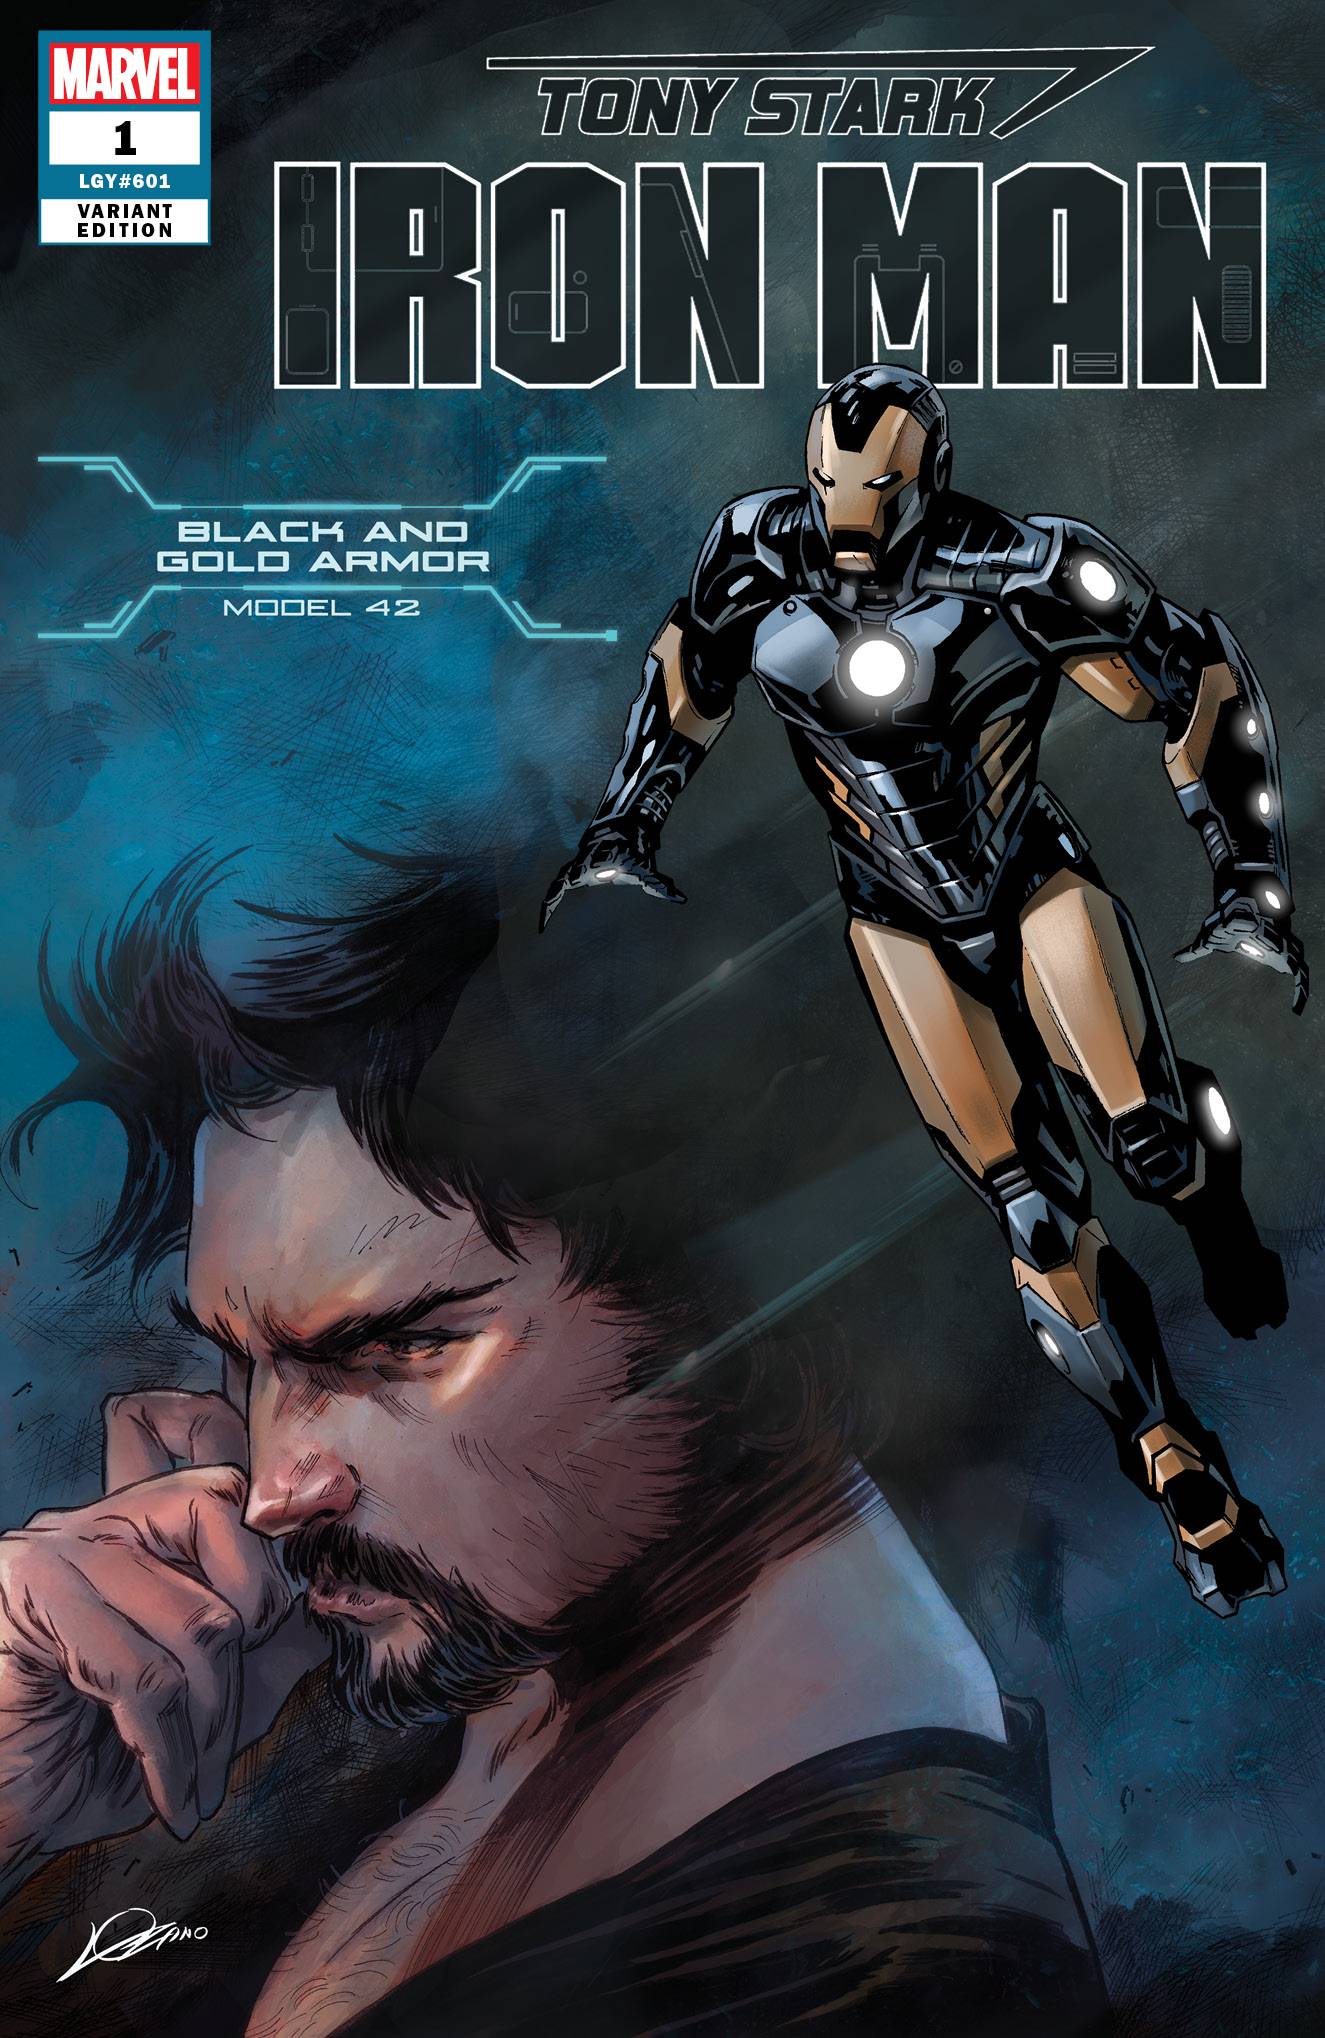 Tony Stark Iron Man #1 Black And Gold Armor Variant (2018)